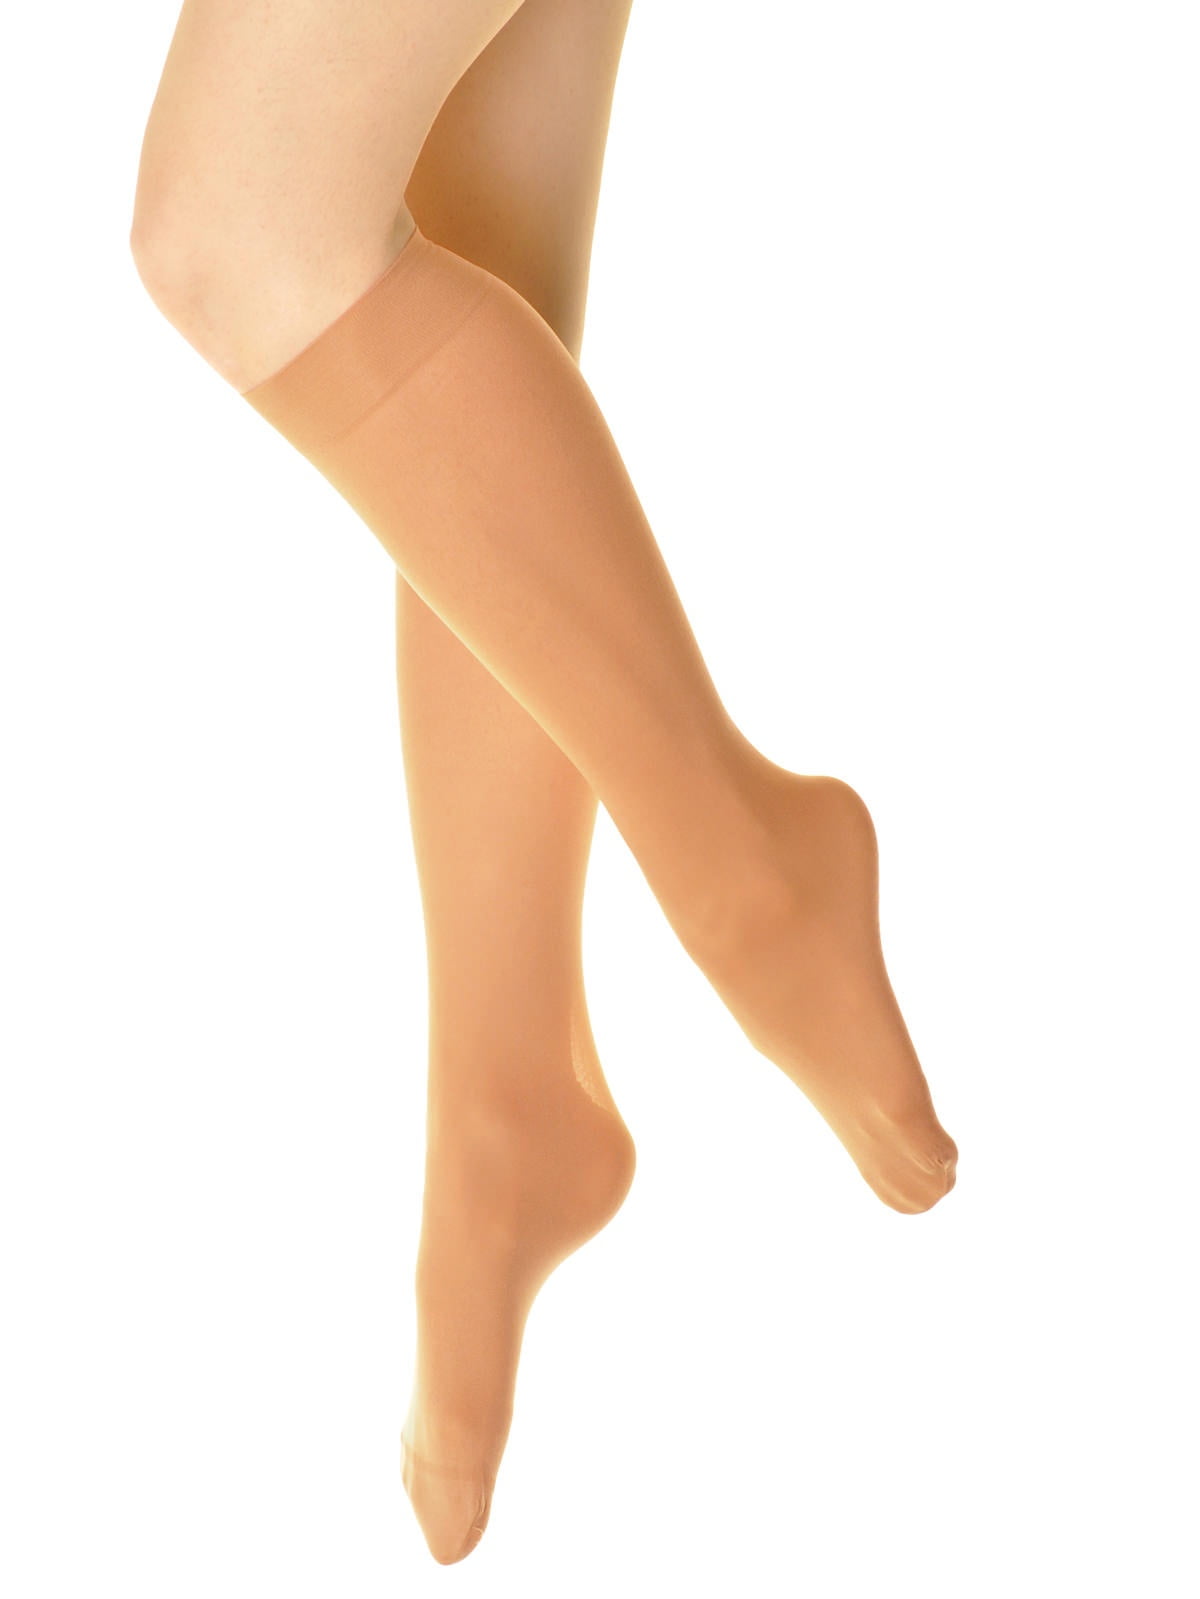 Angelina Sheer Support Nylon Knee High Stockings 6 Pairs